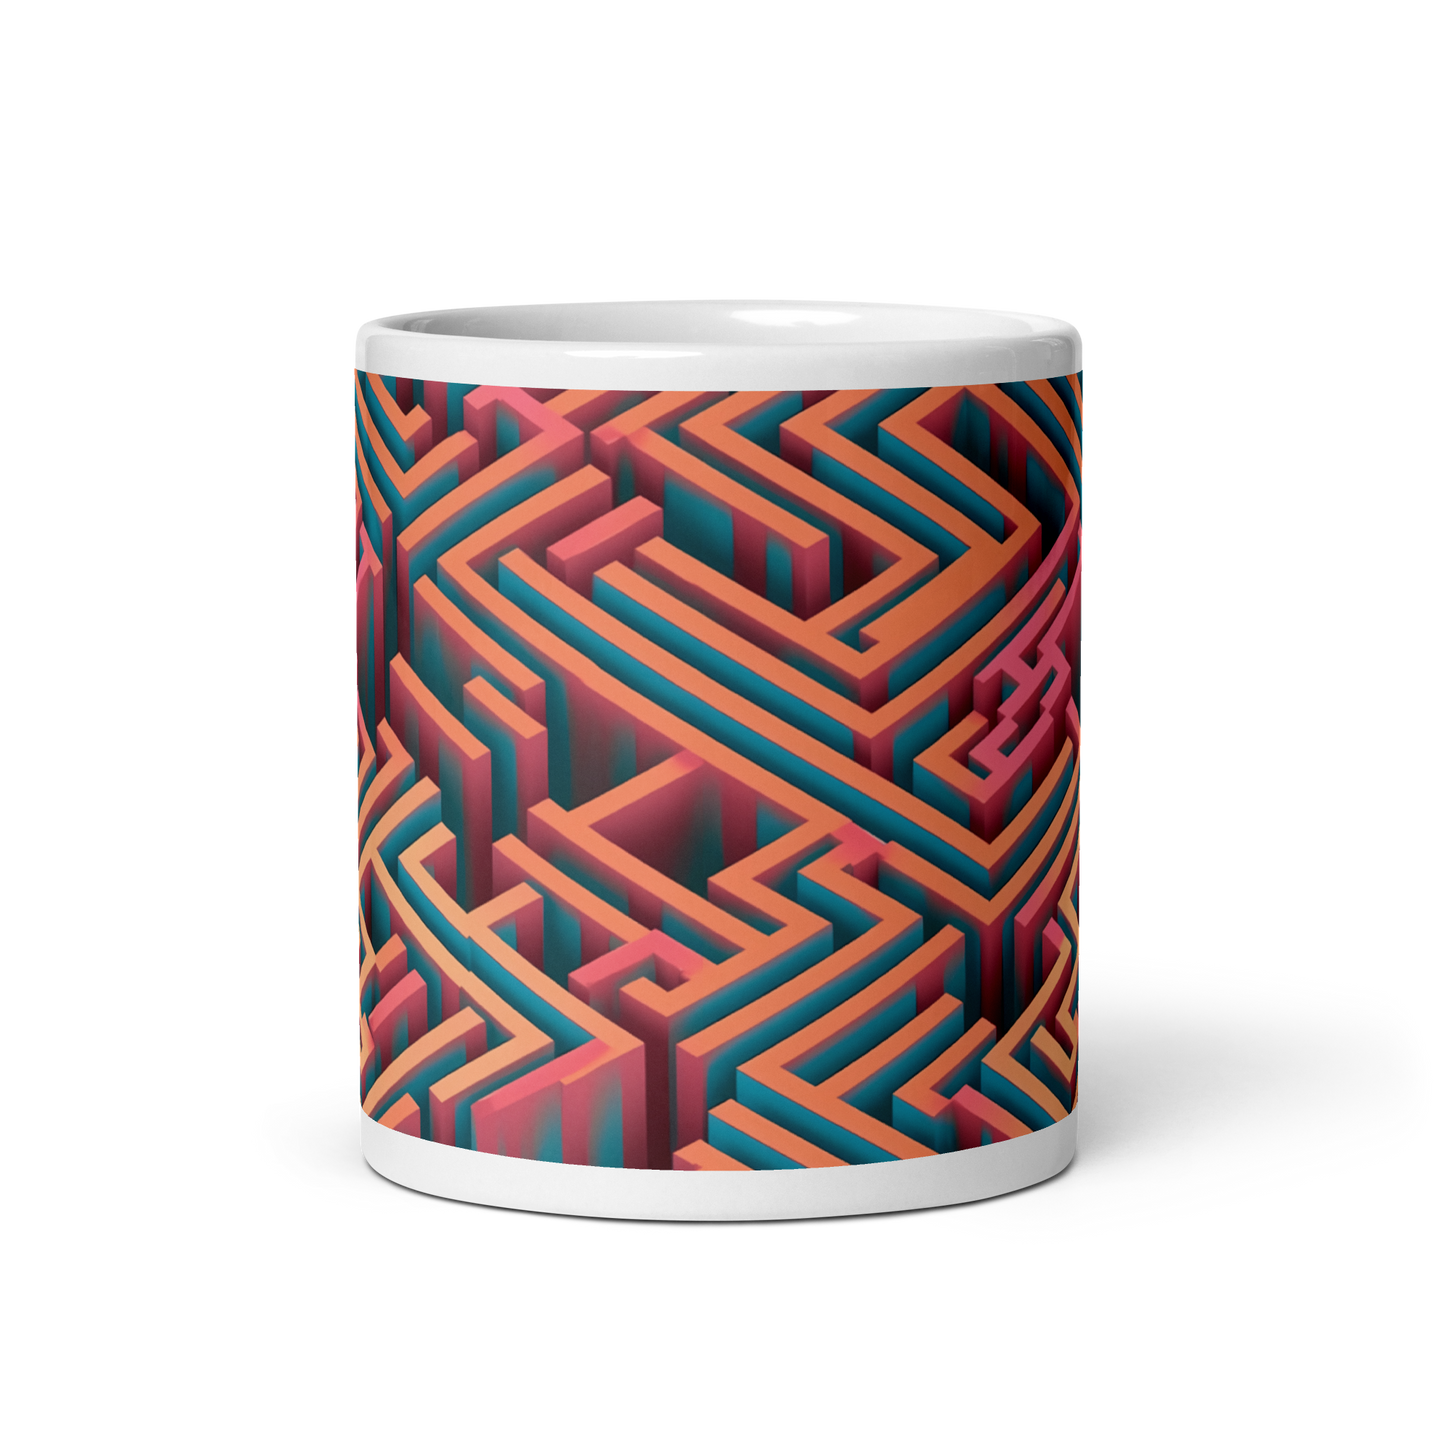 3D Maze Illusion | 3D Patterns | White Glossy Mug - #1